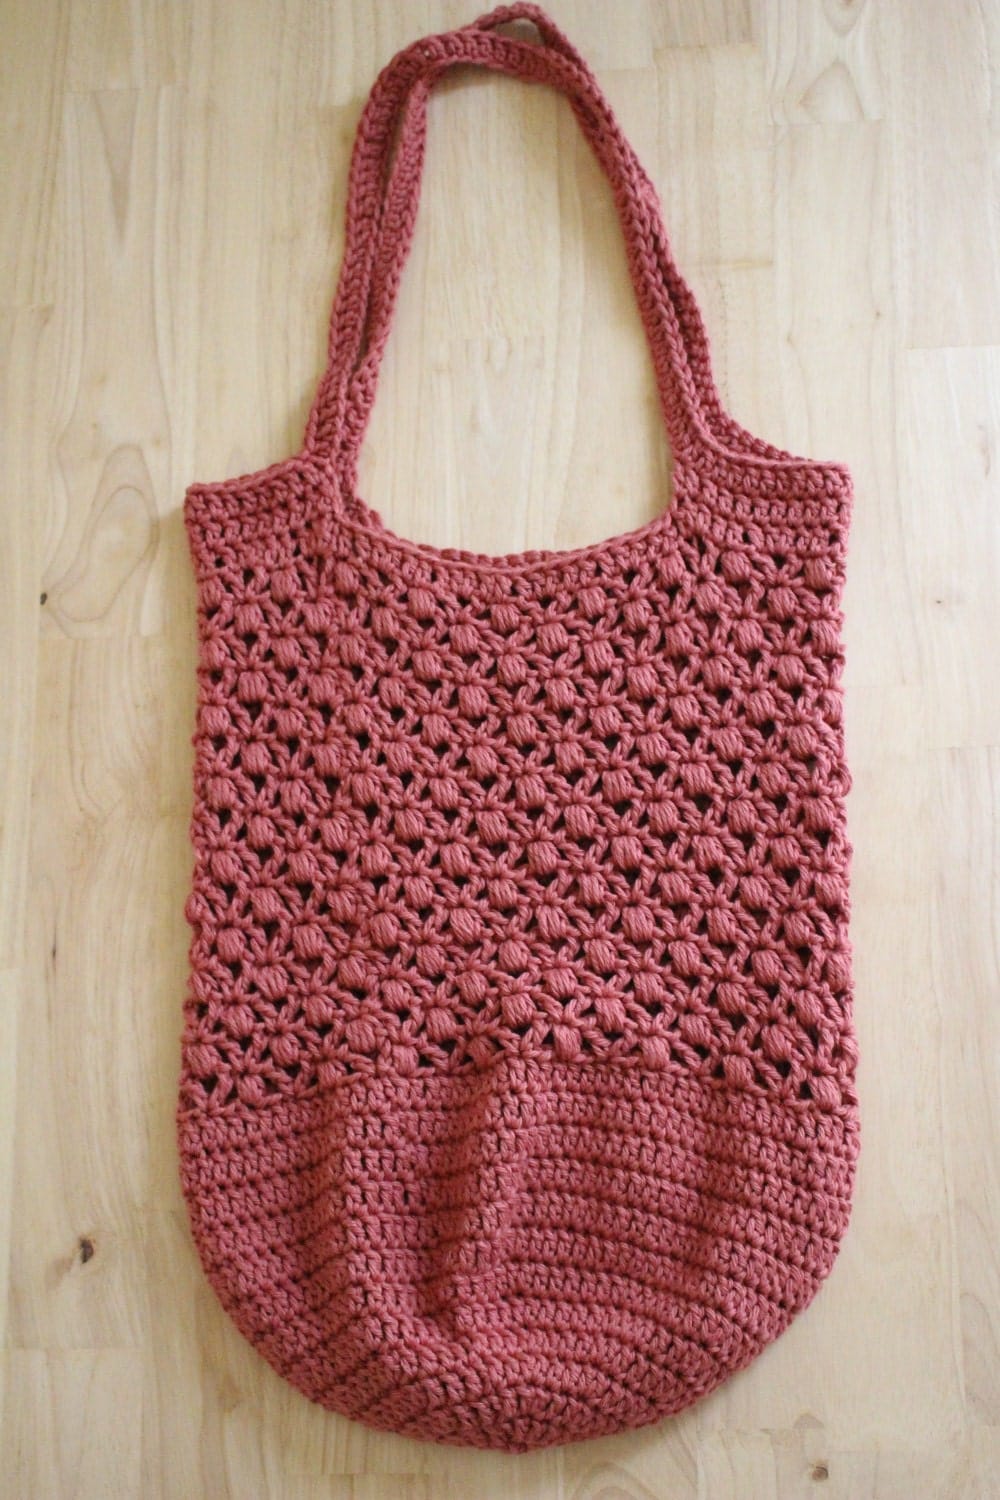 PATTERN - Crochet market bag pattern - Crochet tote bag pattern - Easy ...